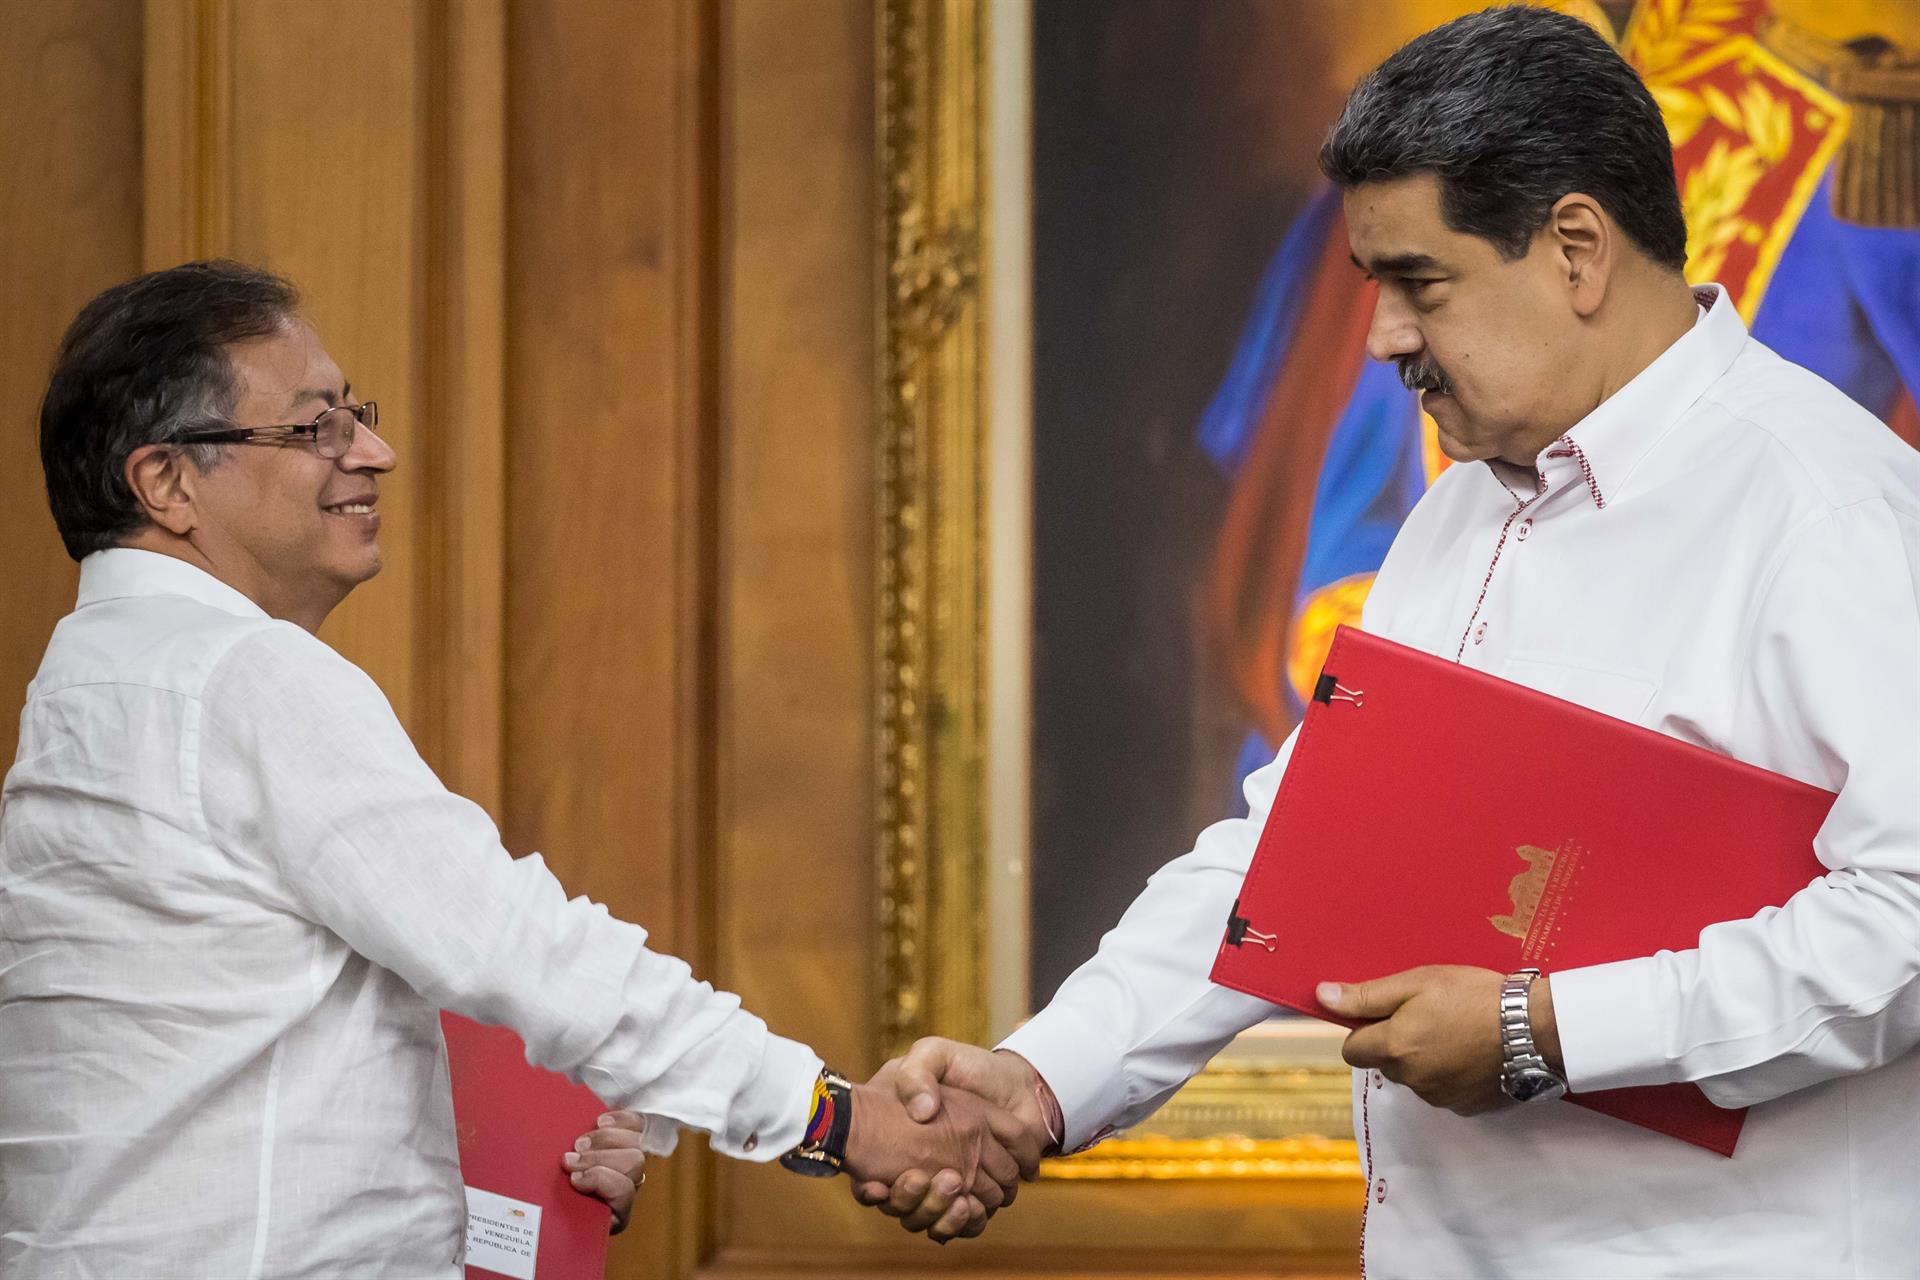 Economía, migración y el papel de Venezuela en Latinoamérica marcaron el encuentro entre Maduro y Petro